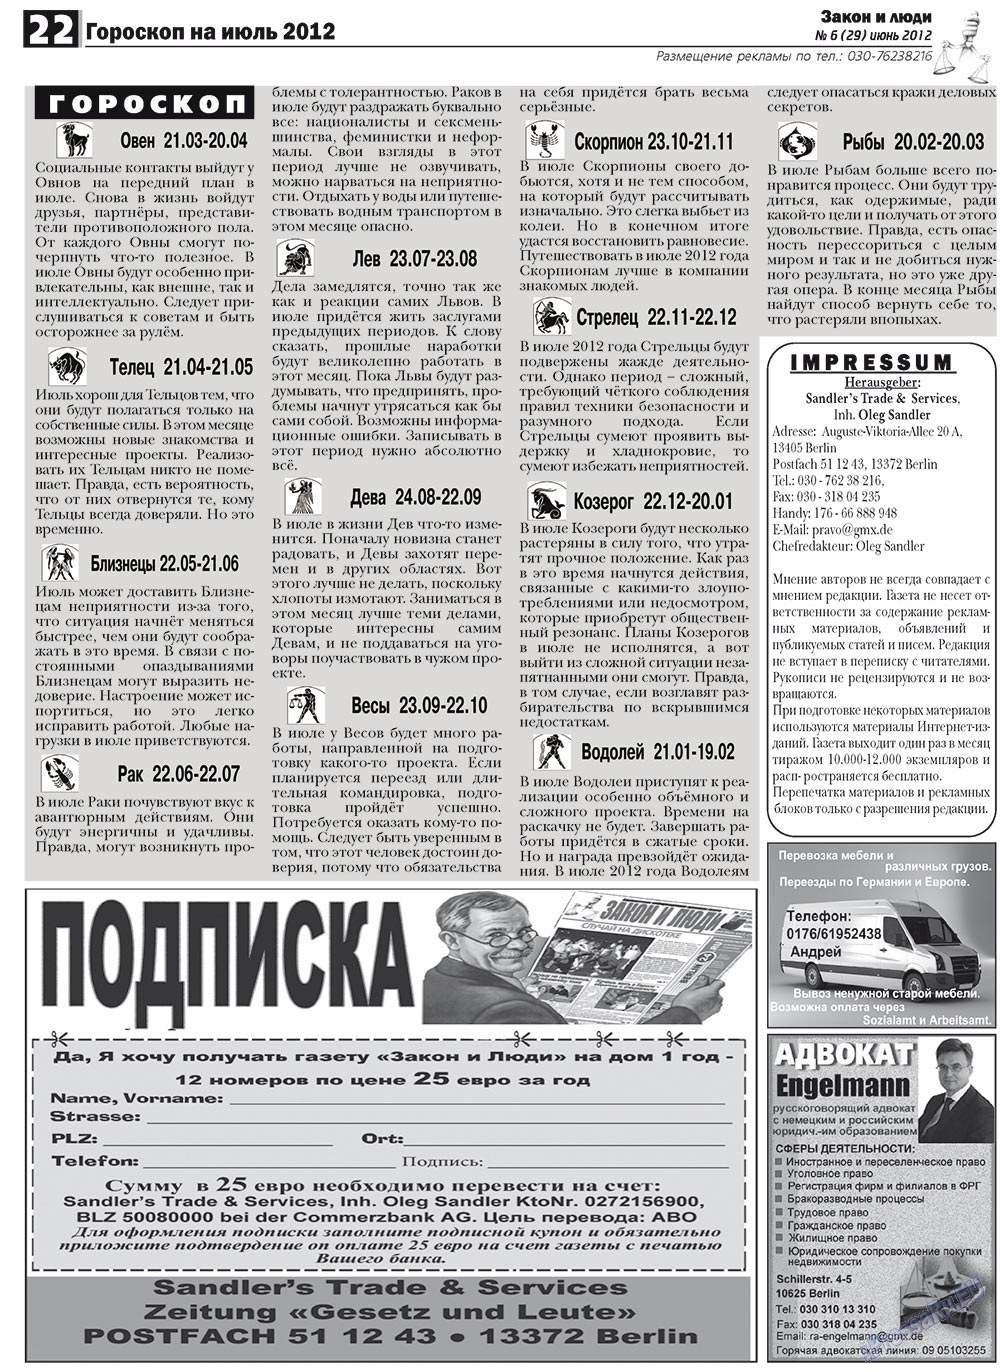 Закон и люди, газета. 2012 №6 стр.22